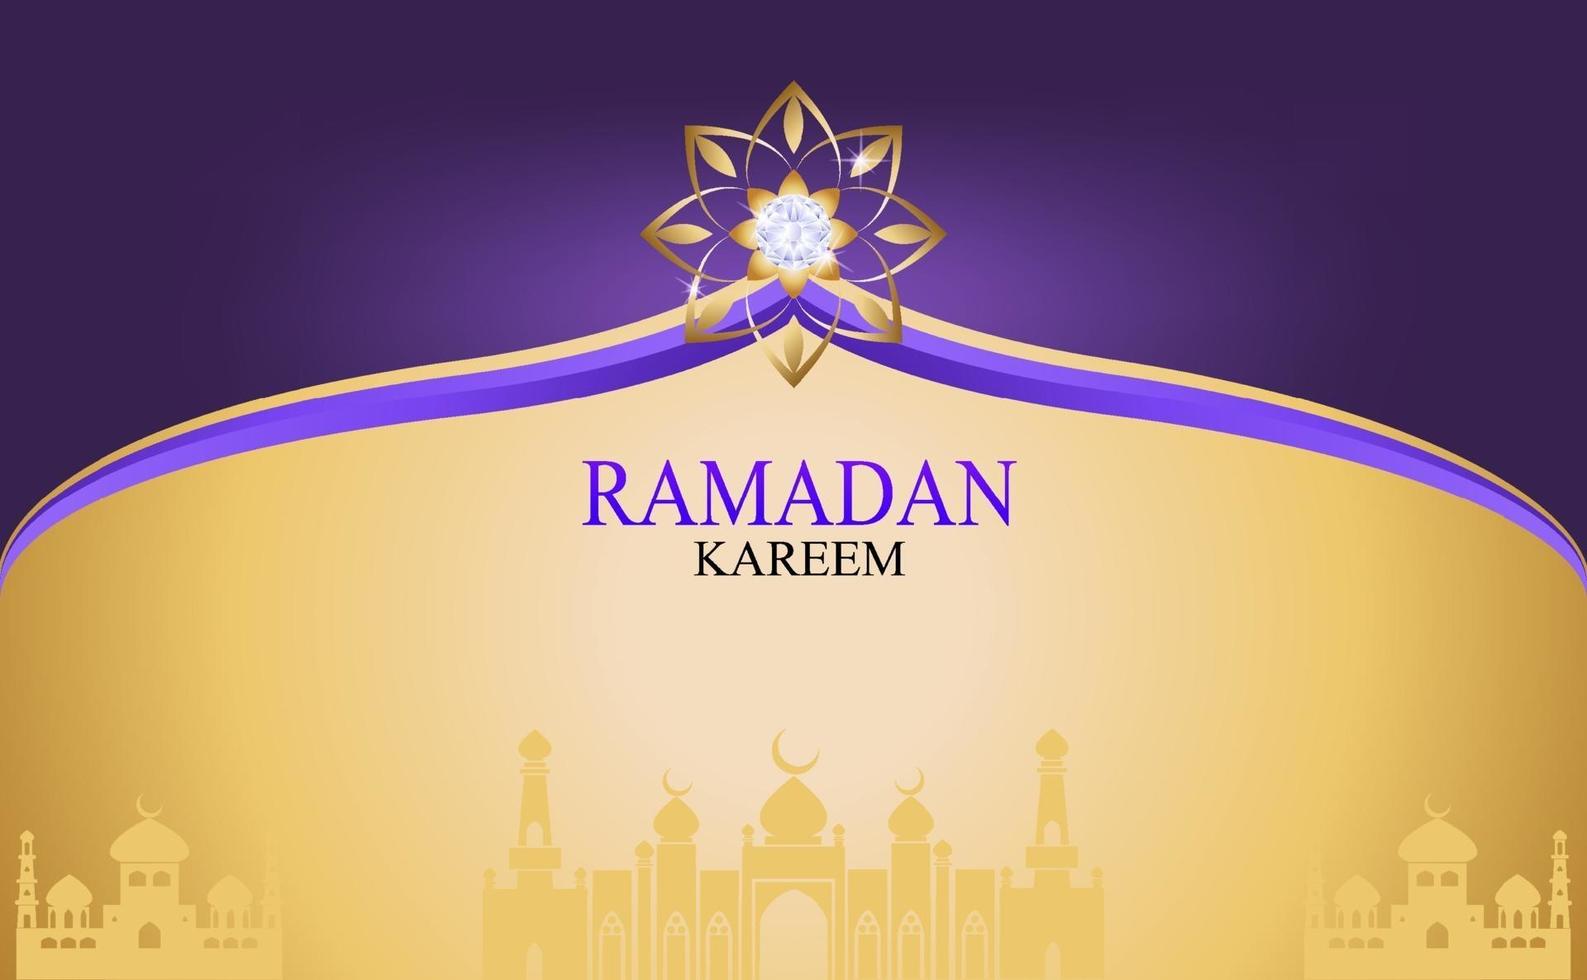 vetor ouro ramadan kareem para desejar o festival islâmico.